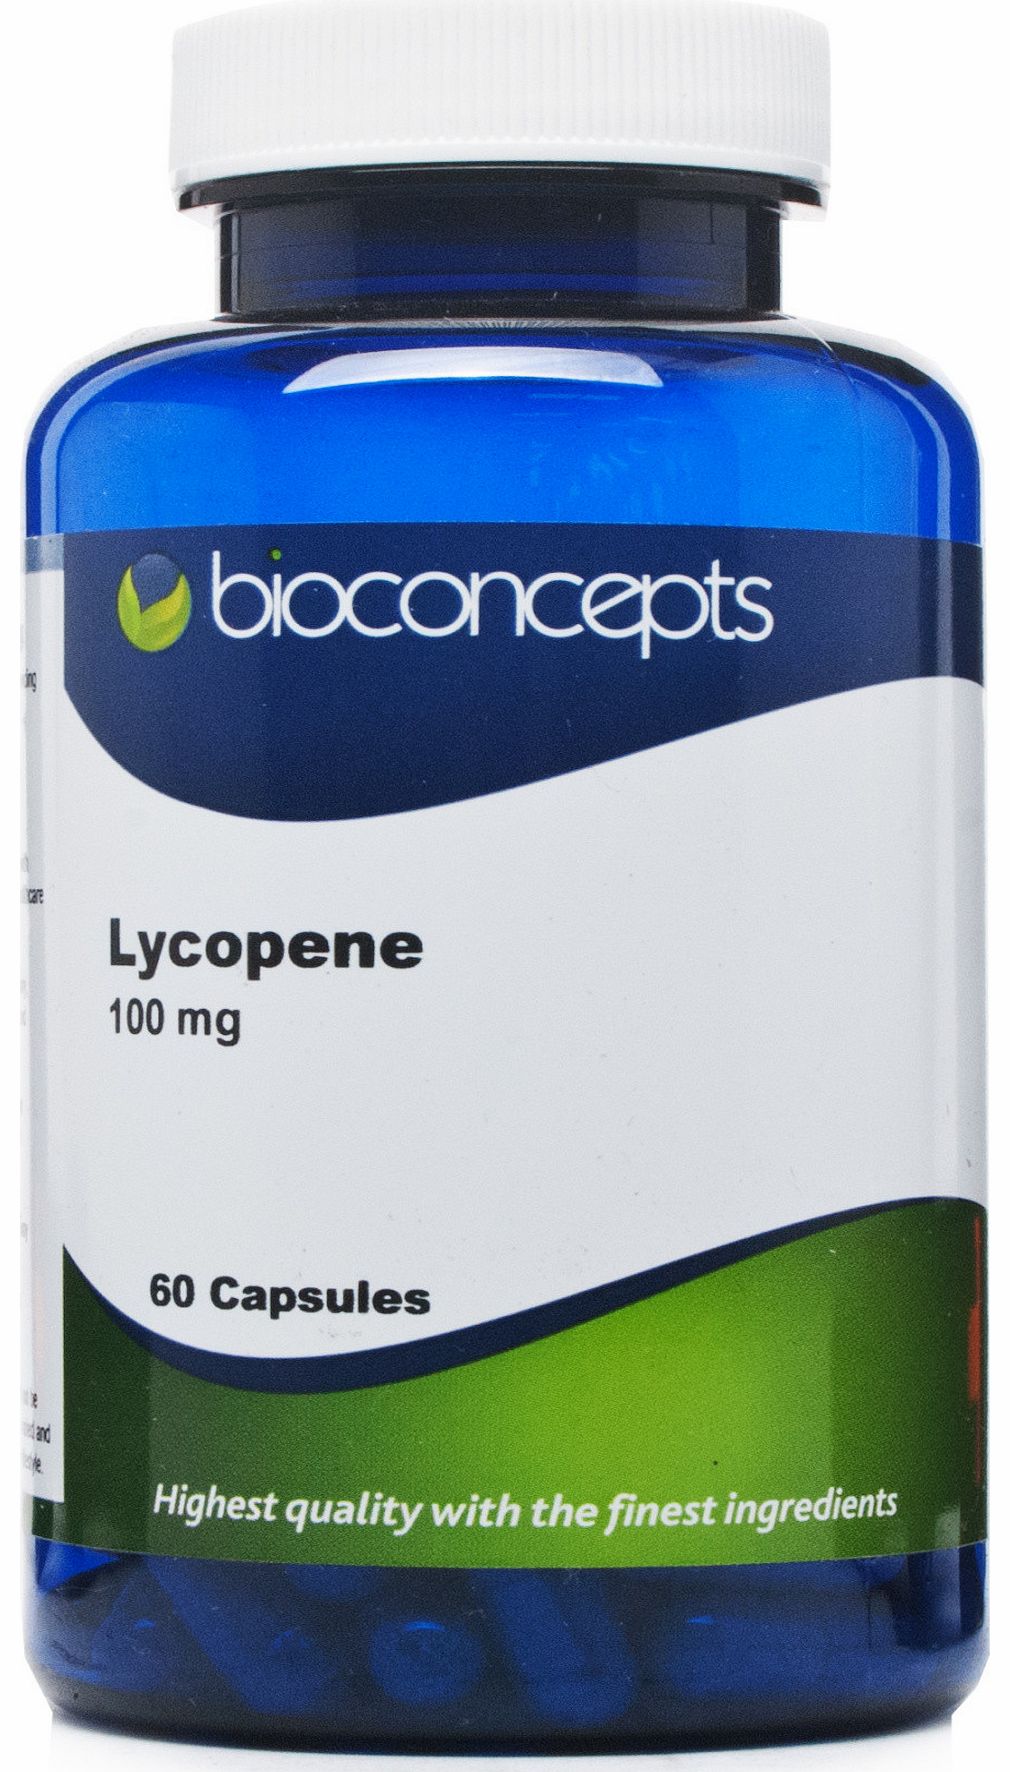 Bioconcepts Lycopene 100mg